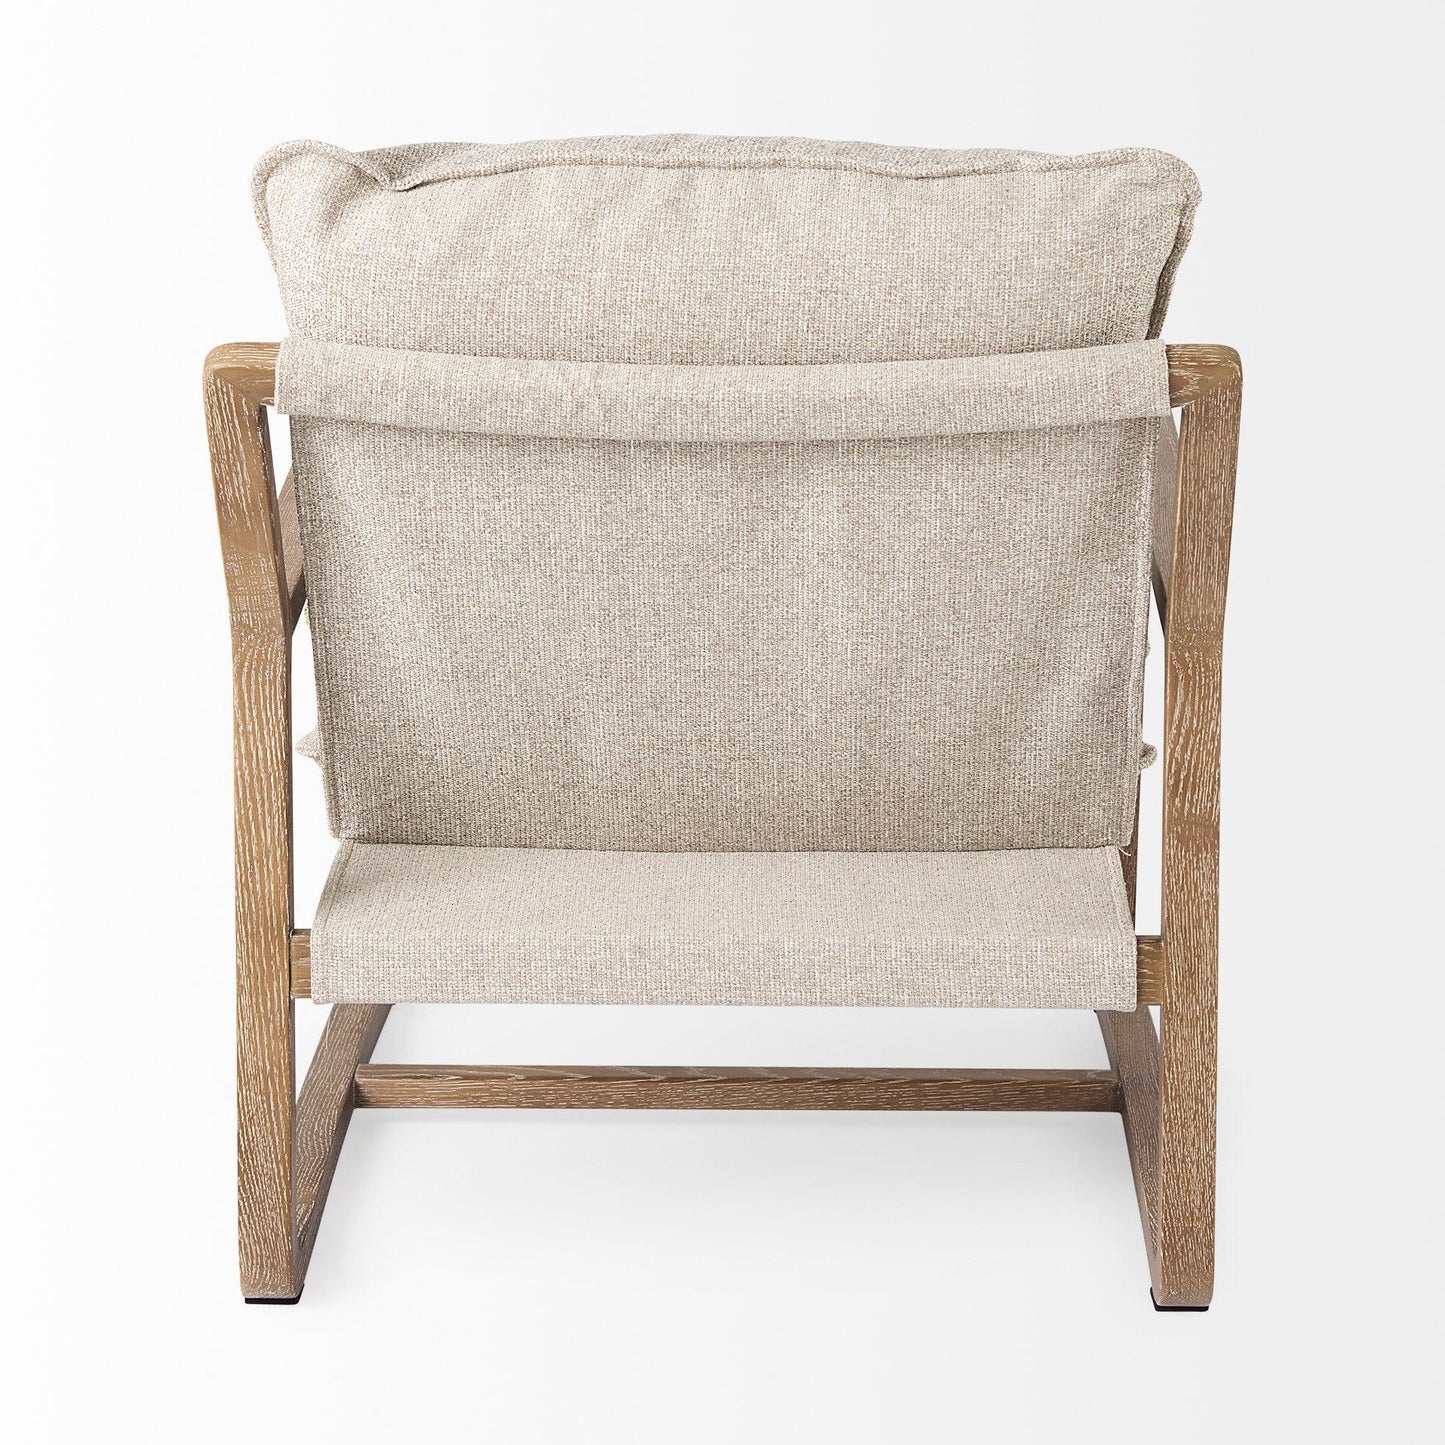 Brayden 28.3L x 34.1W x 35H Light Brown Wood W/ Beige Fabric Seat Accent Chair